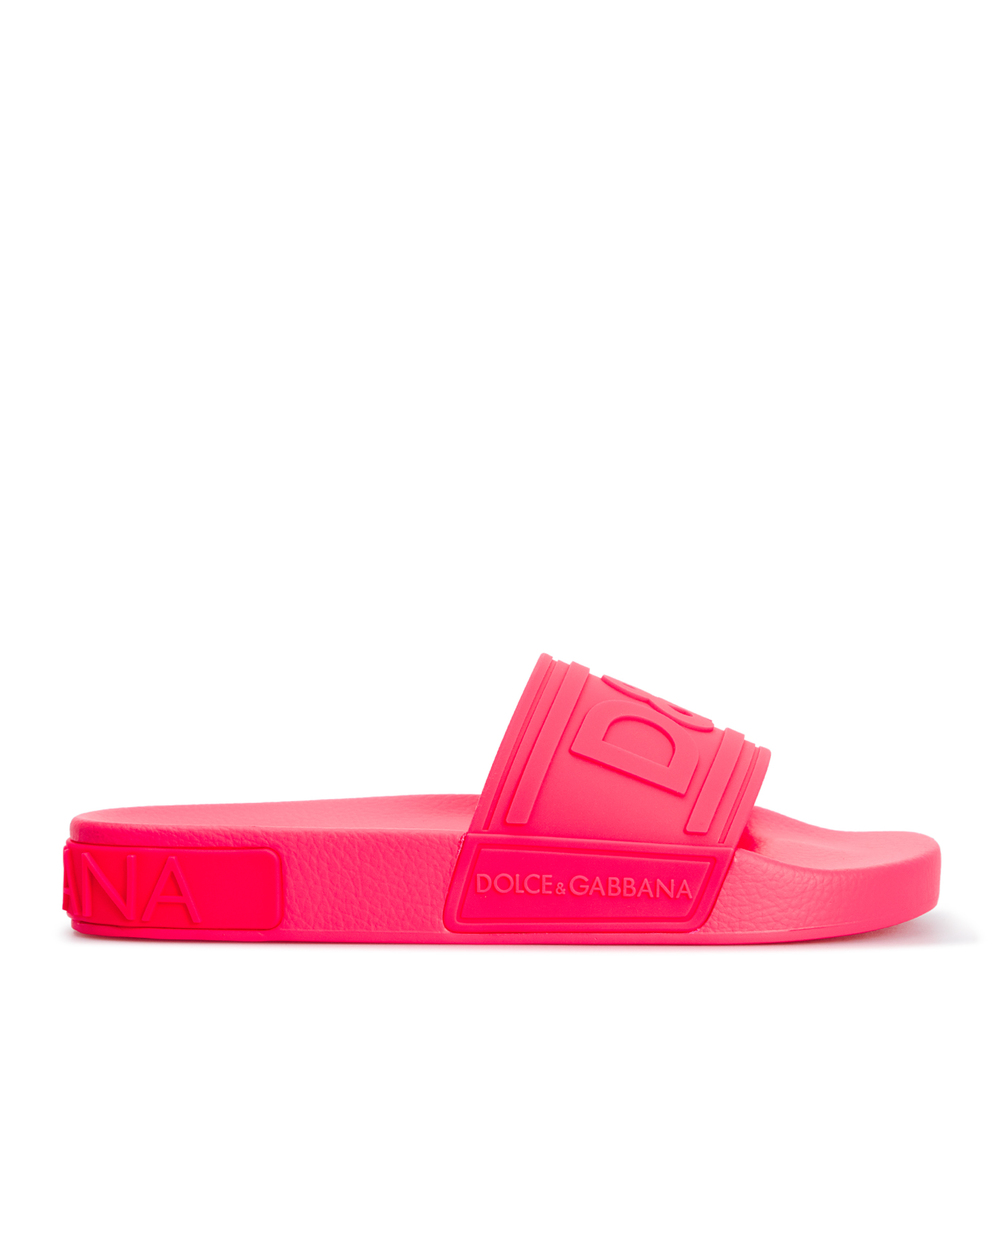 Слайдеры Dolce&Gabbana CW0141-AX756, розовый цвет • Купить в интернет-магазине Kameron